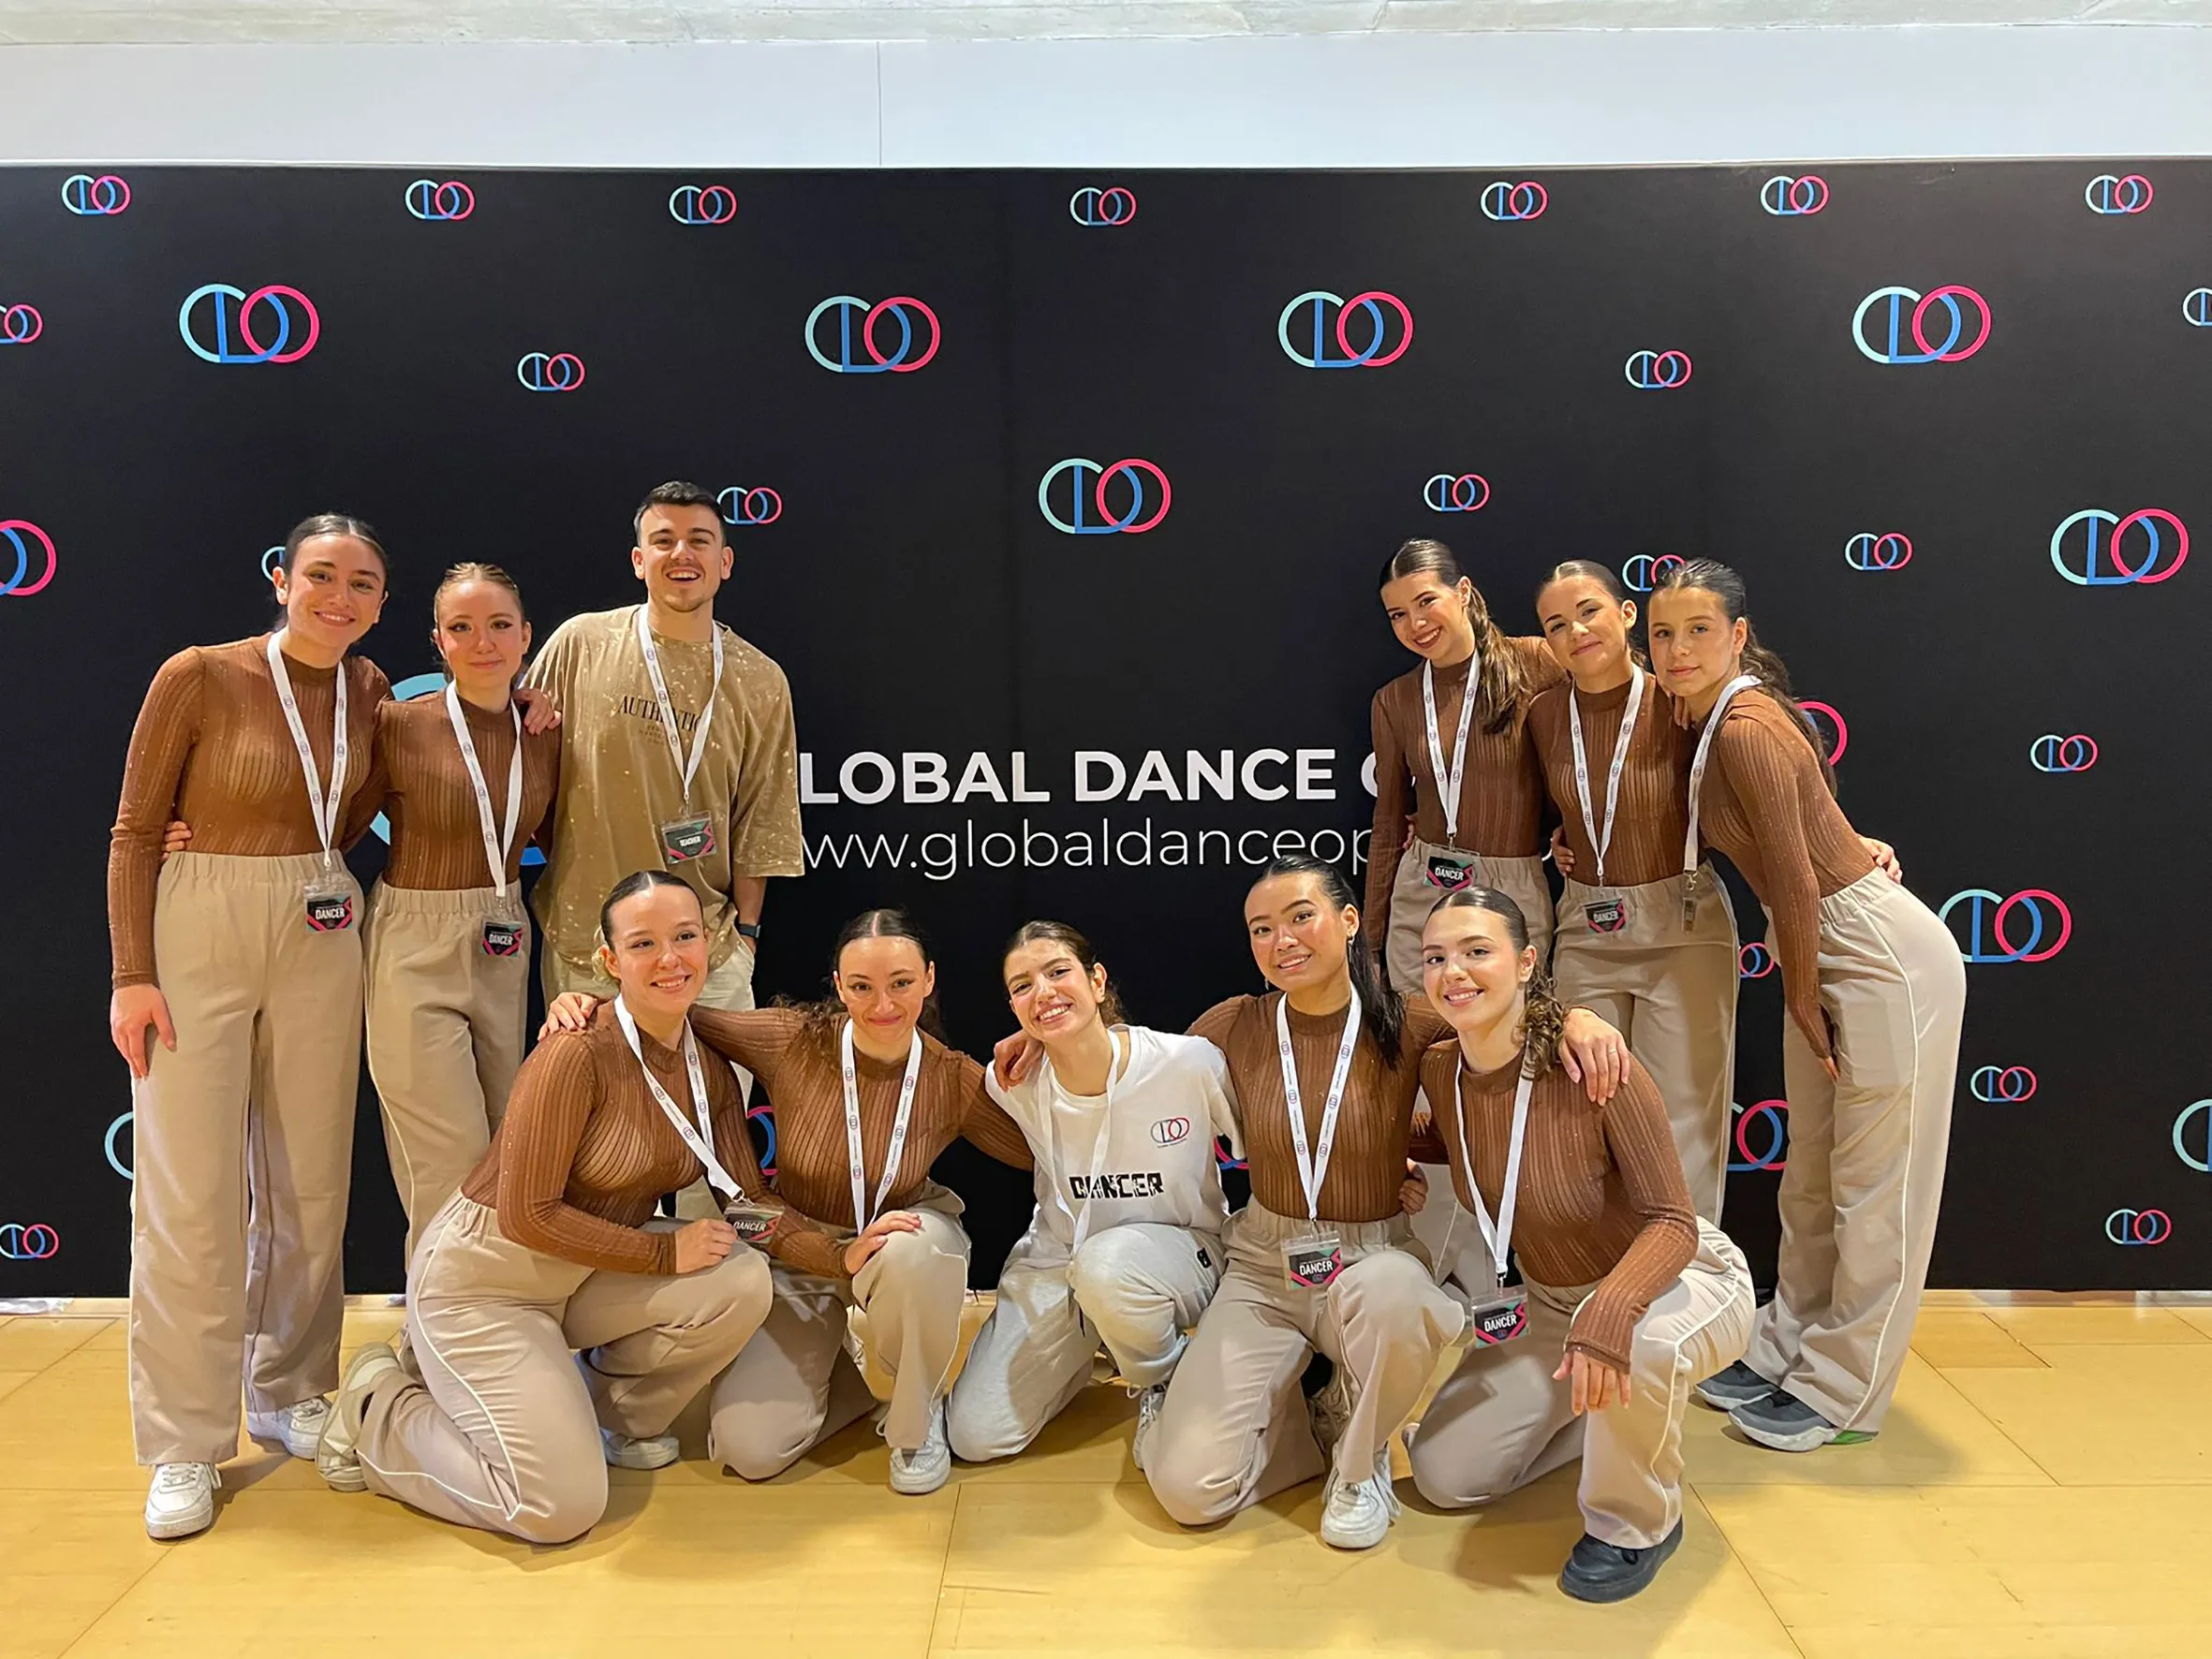 La Escuela de Danza de Covibar representará a España en el campeonato Global Dance Open